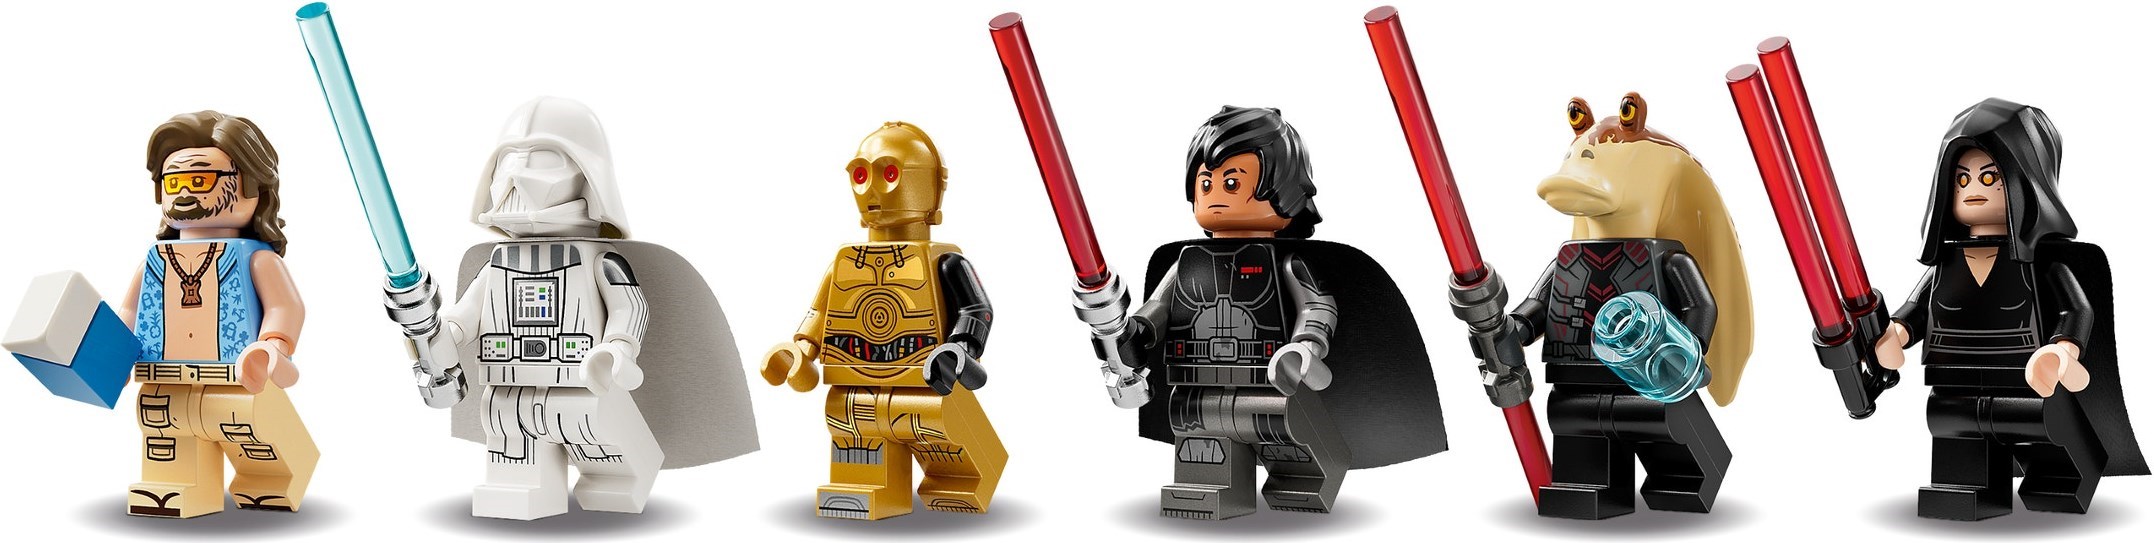 LEGO Star Wars - Dark Falcon - set 75389